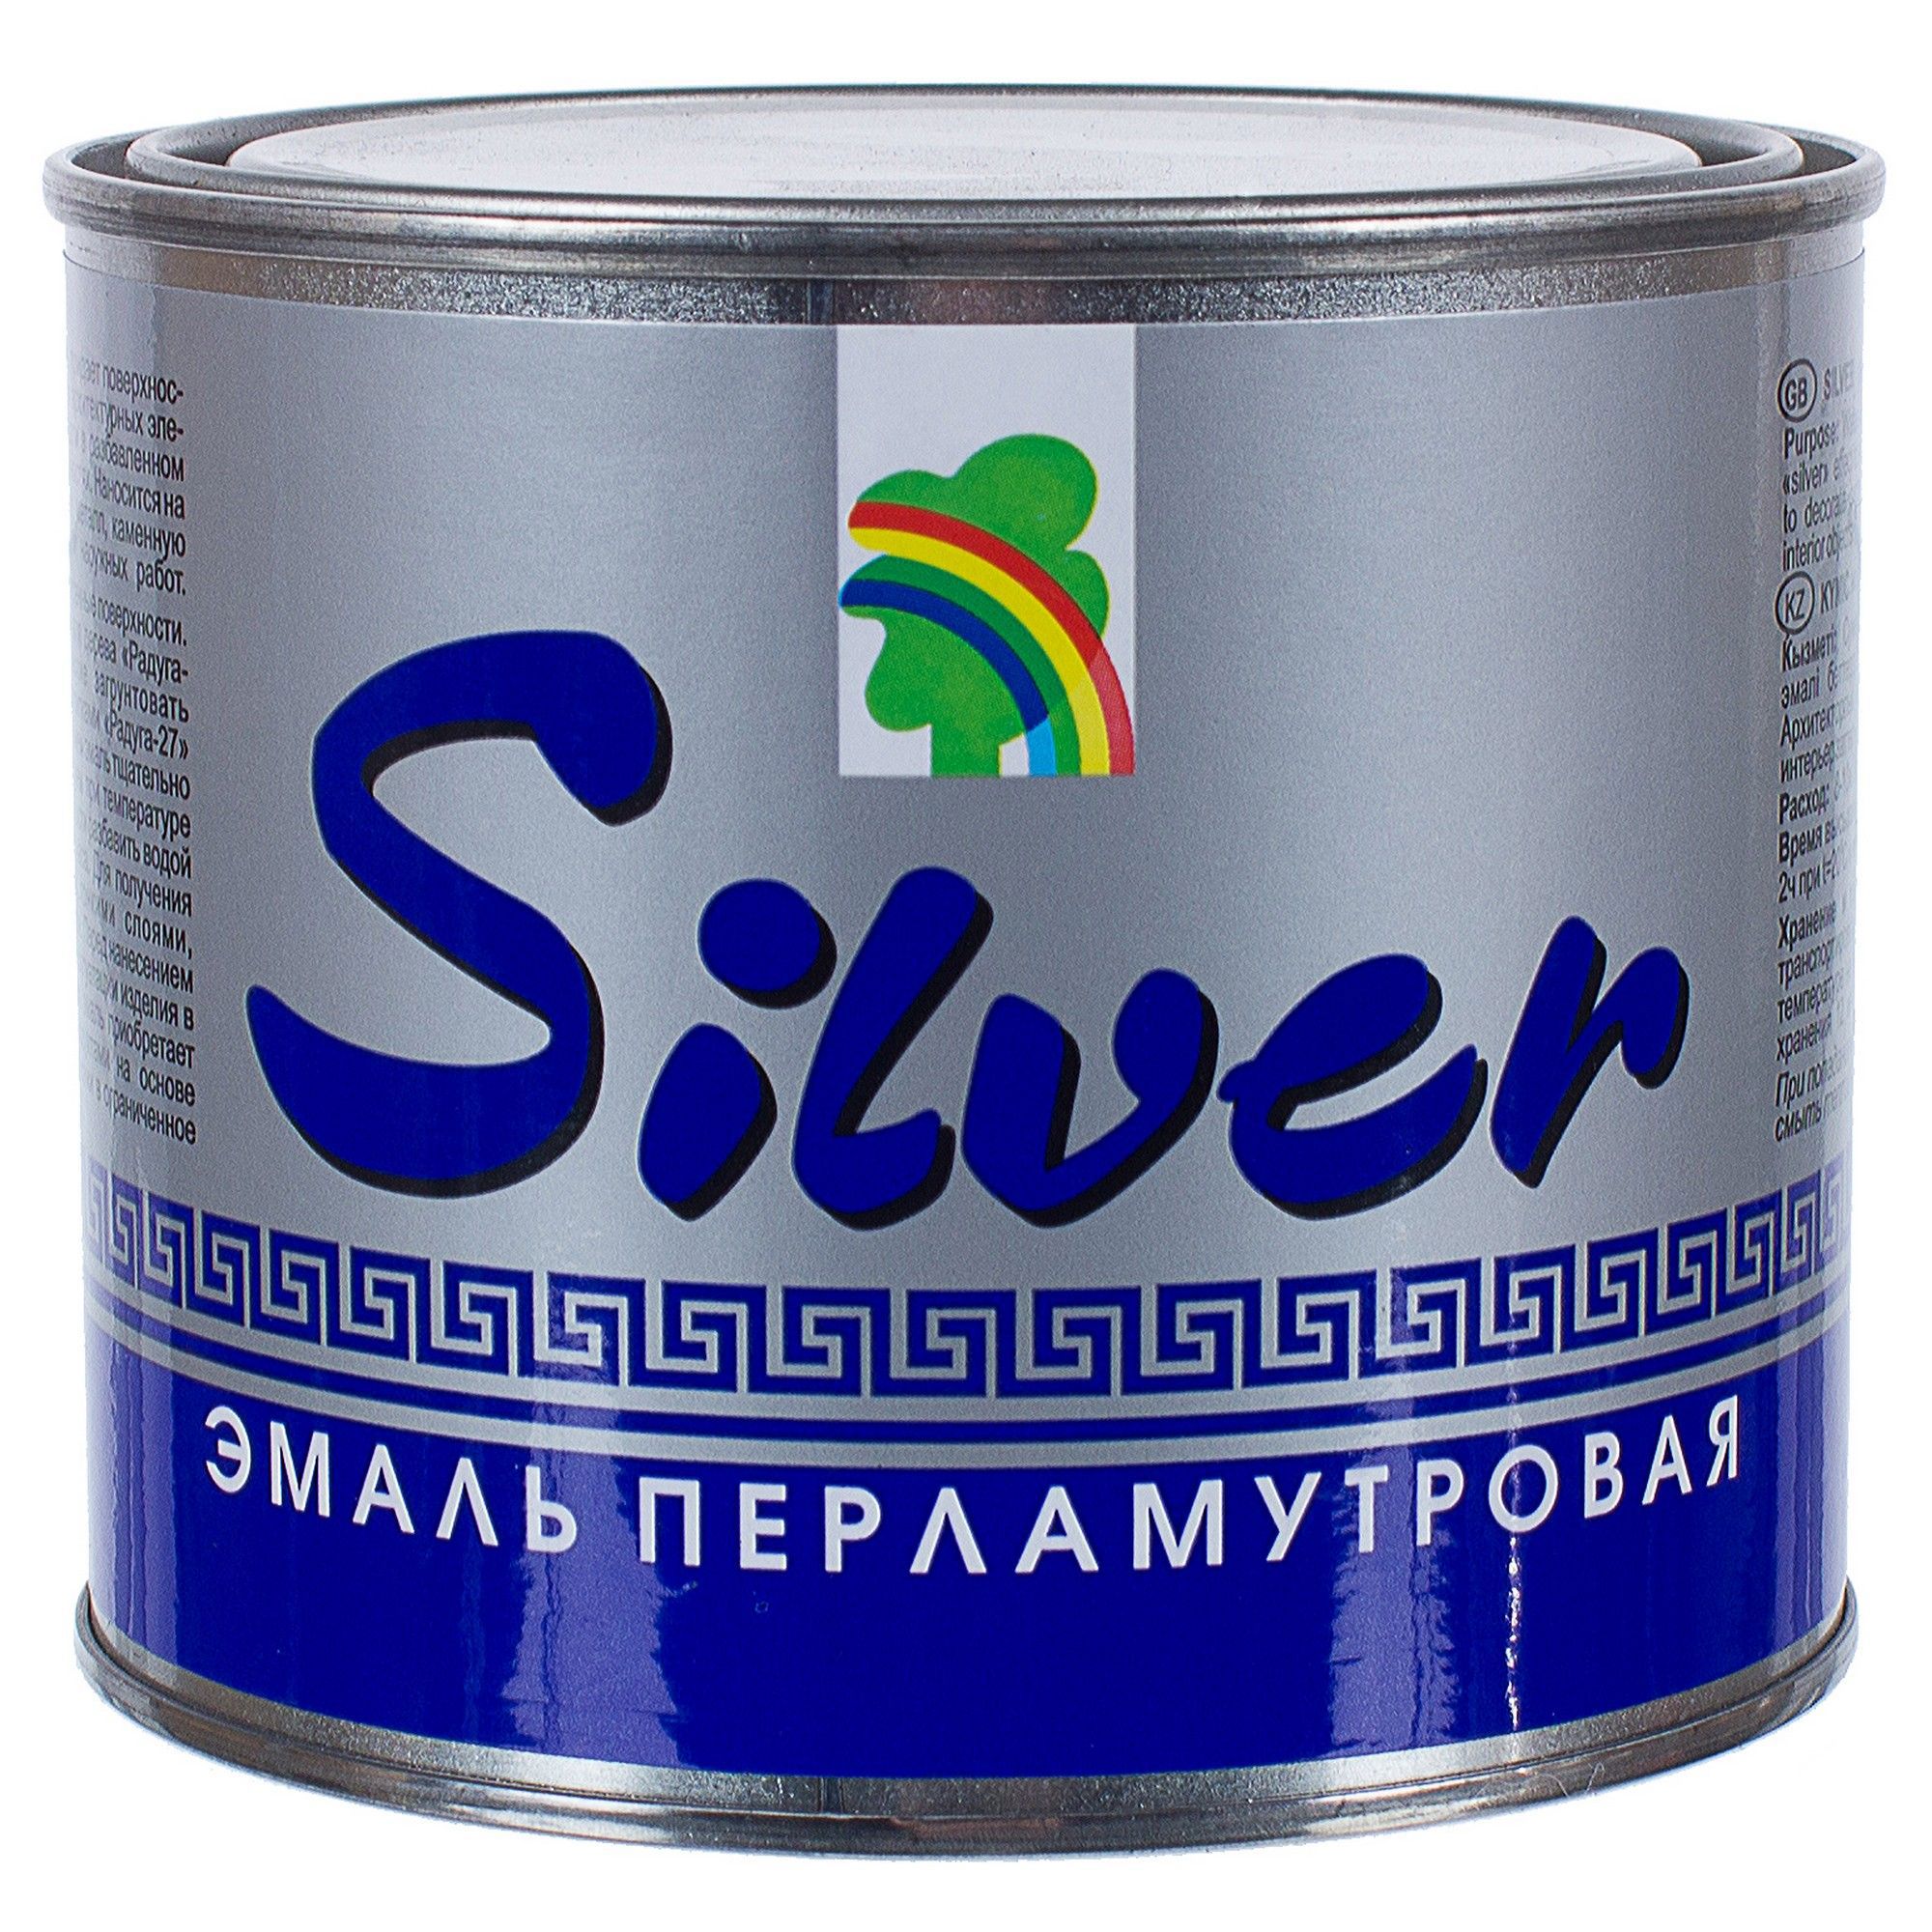  акриловая перламутровое серебро Р-117 0.4 л по цене 376 ₽/шт .